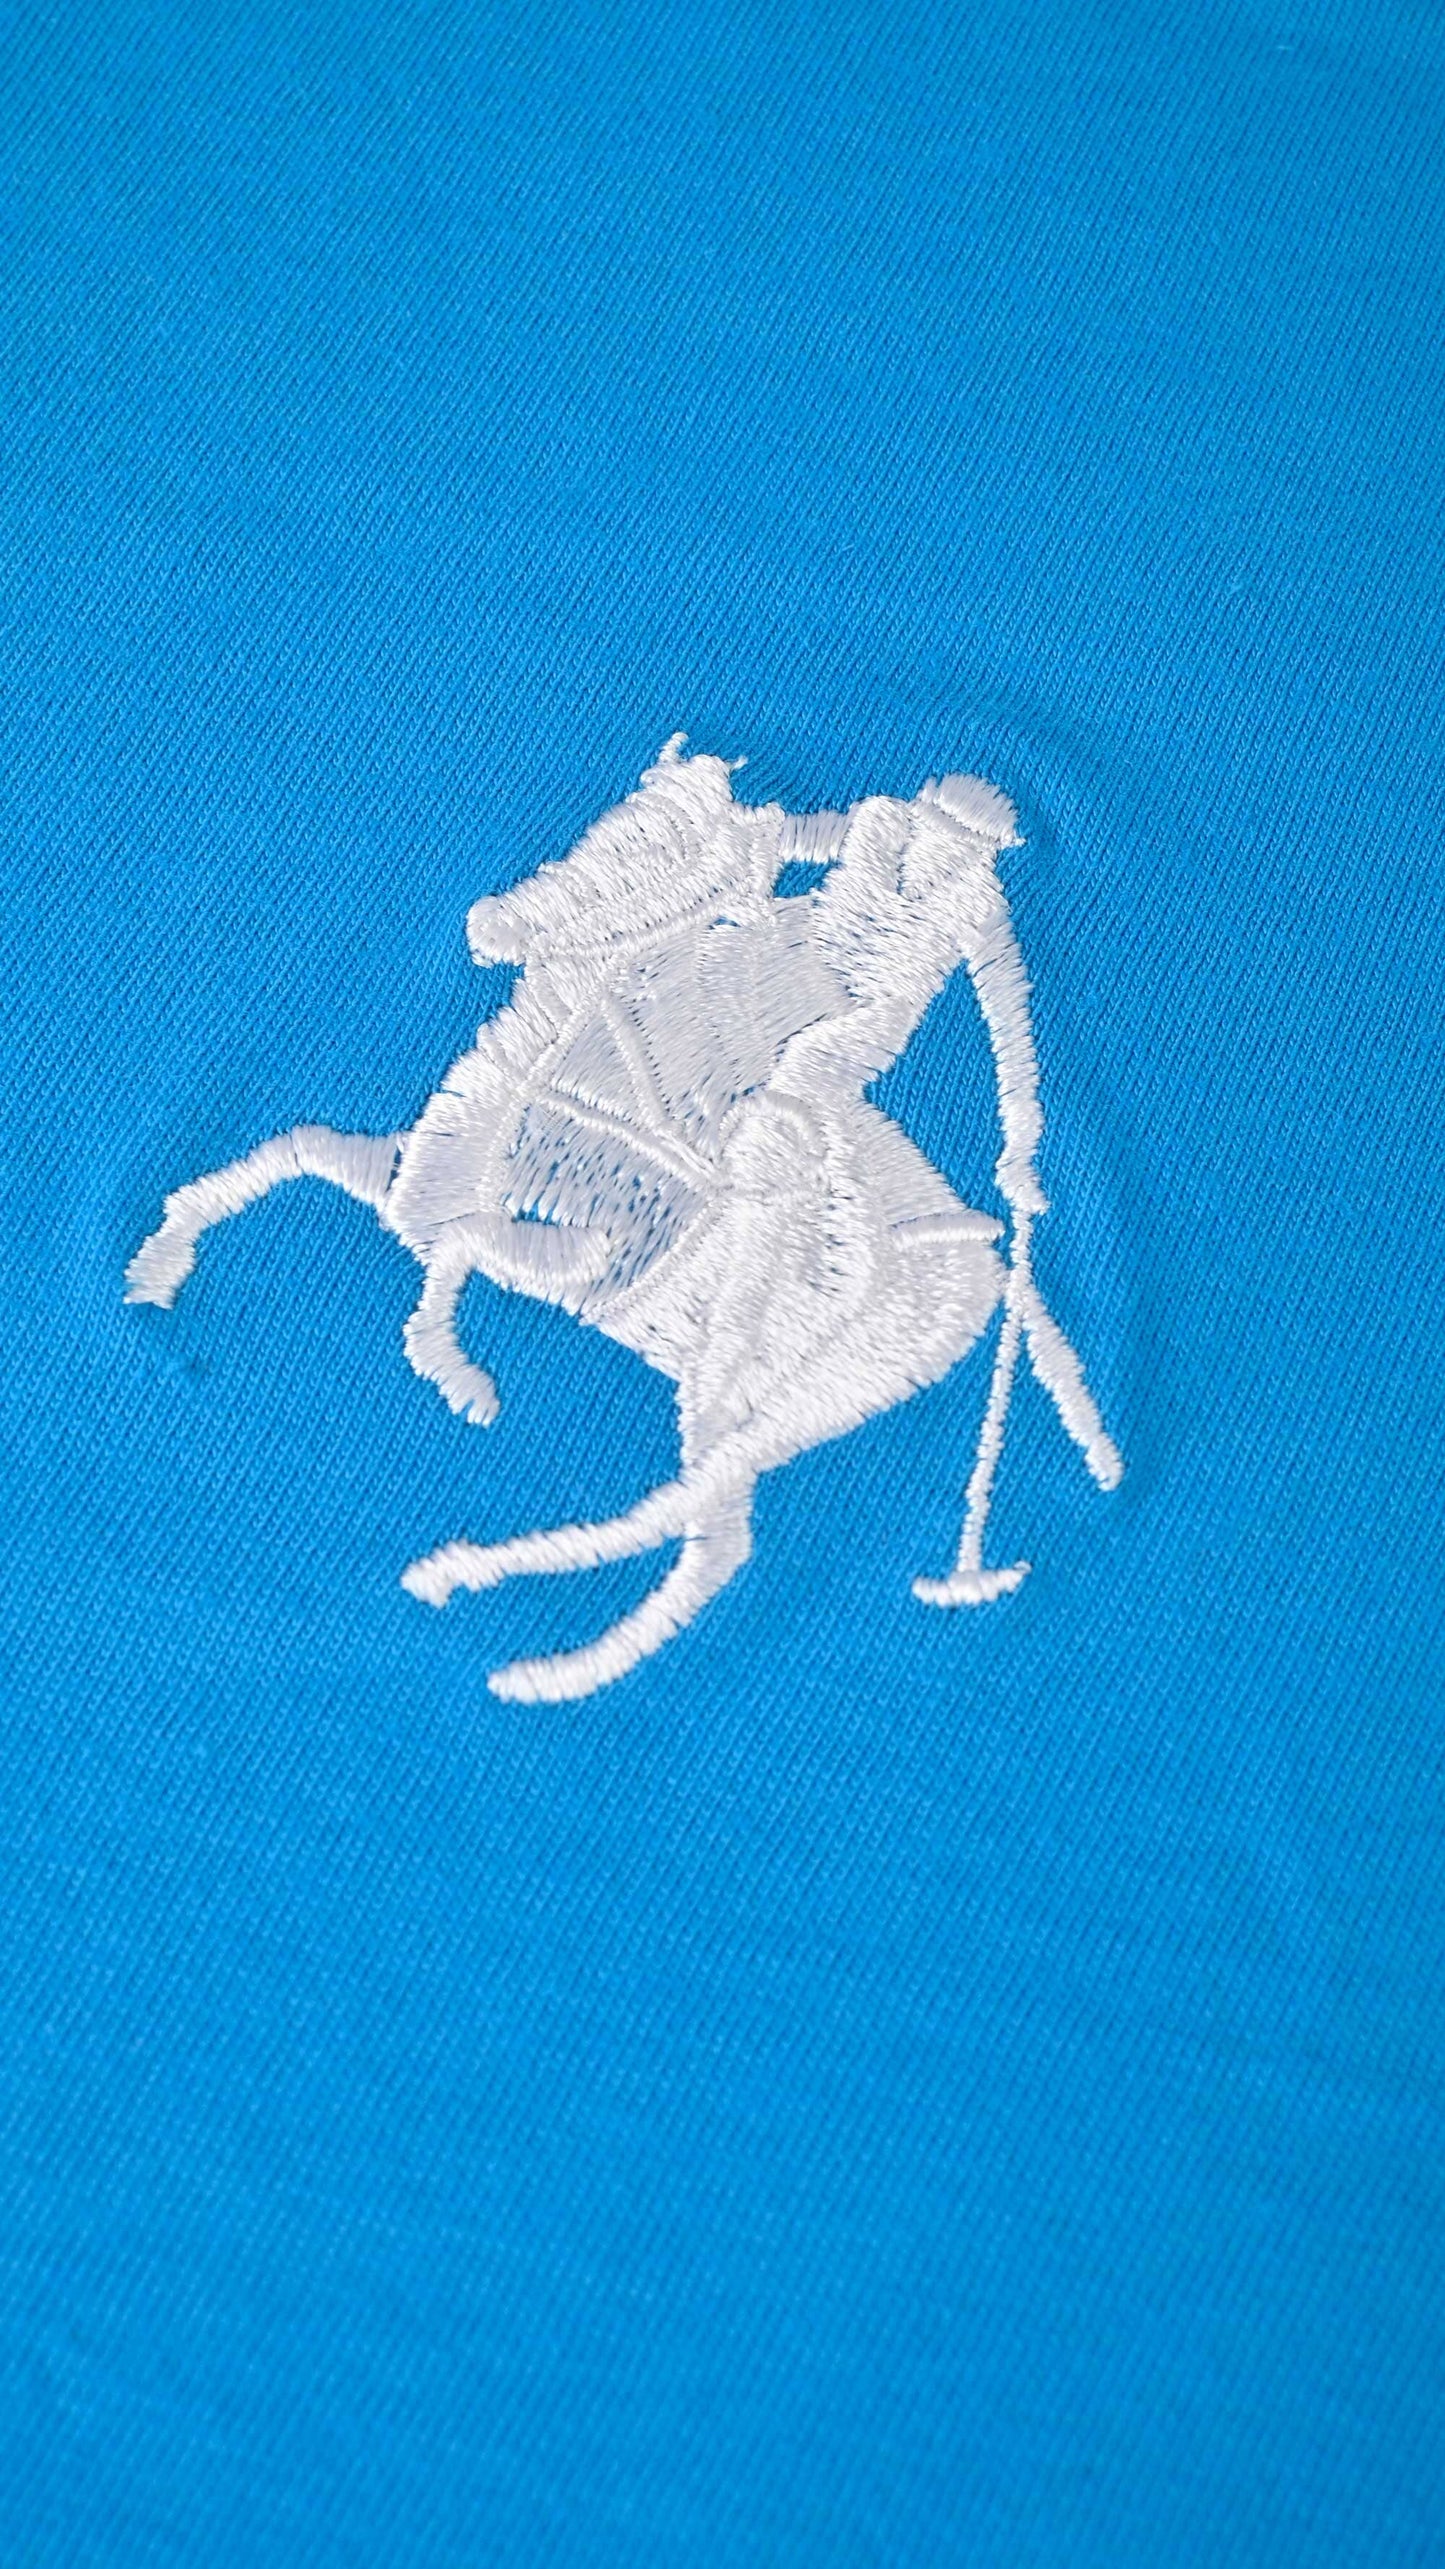 Polo Republica Men's Polo Rider & 8 Embroidered Crew Neck Tee Shirt Men's Tee Shirt Polo Republica 